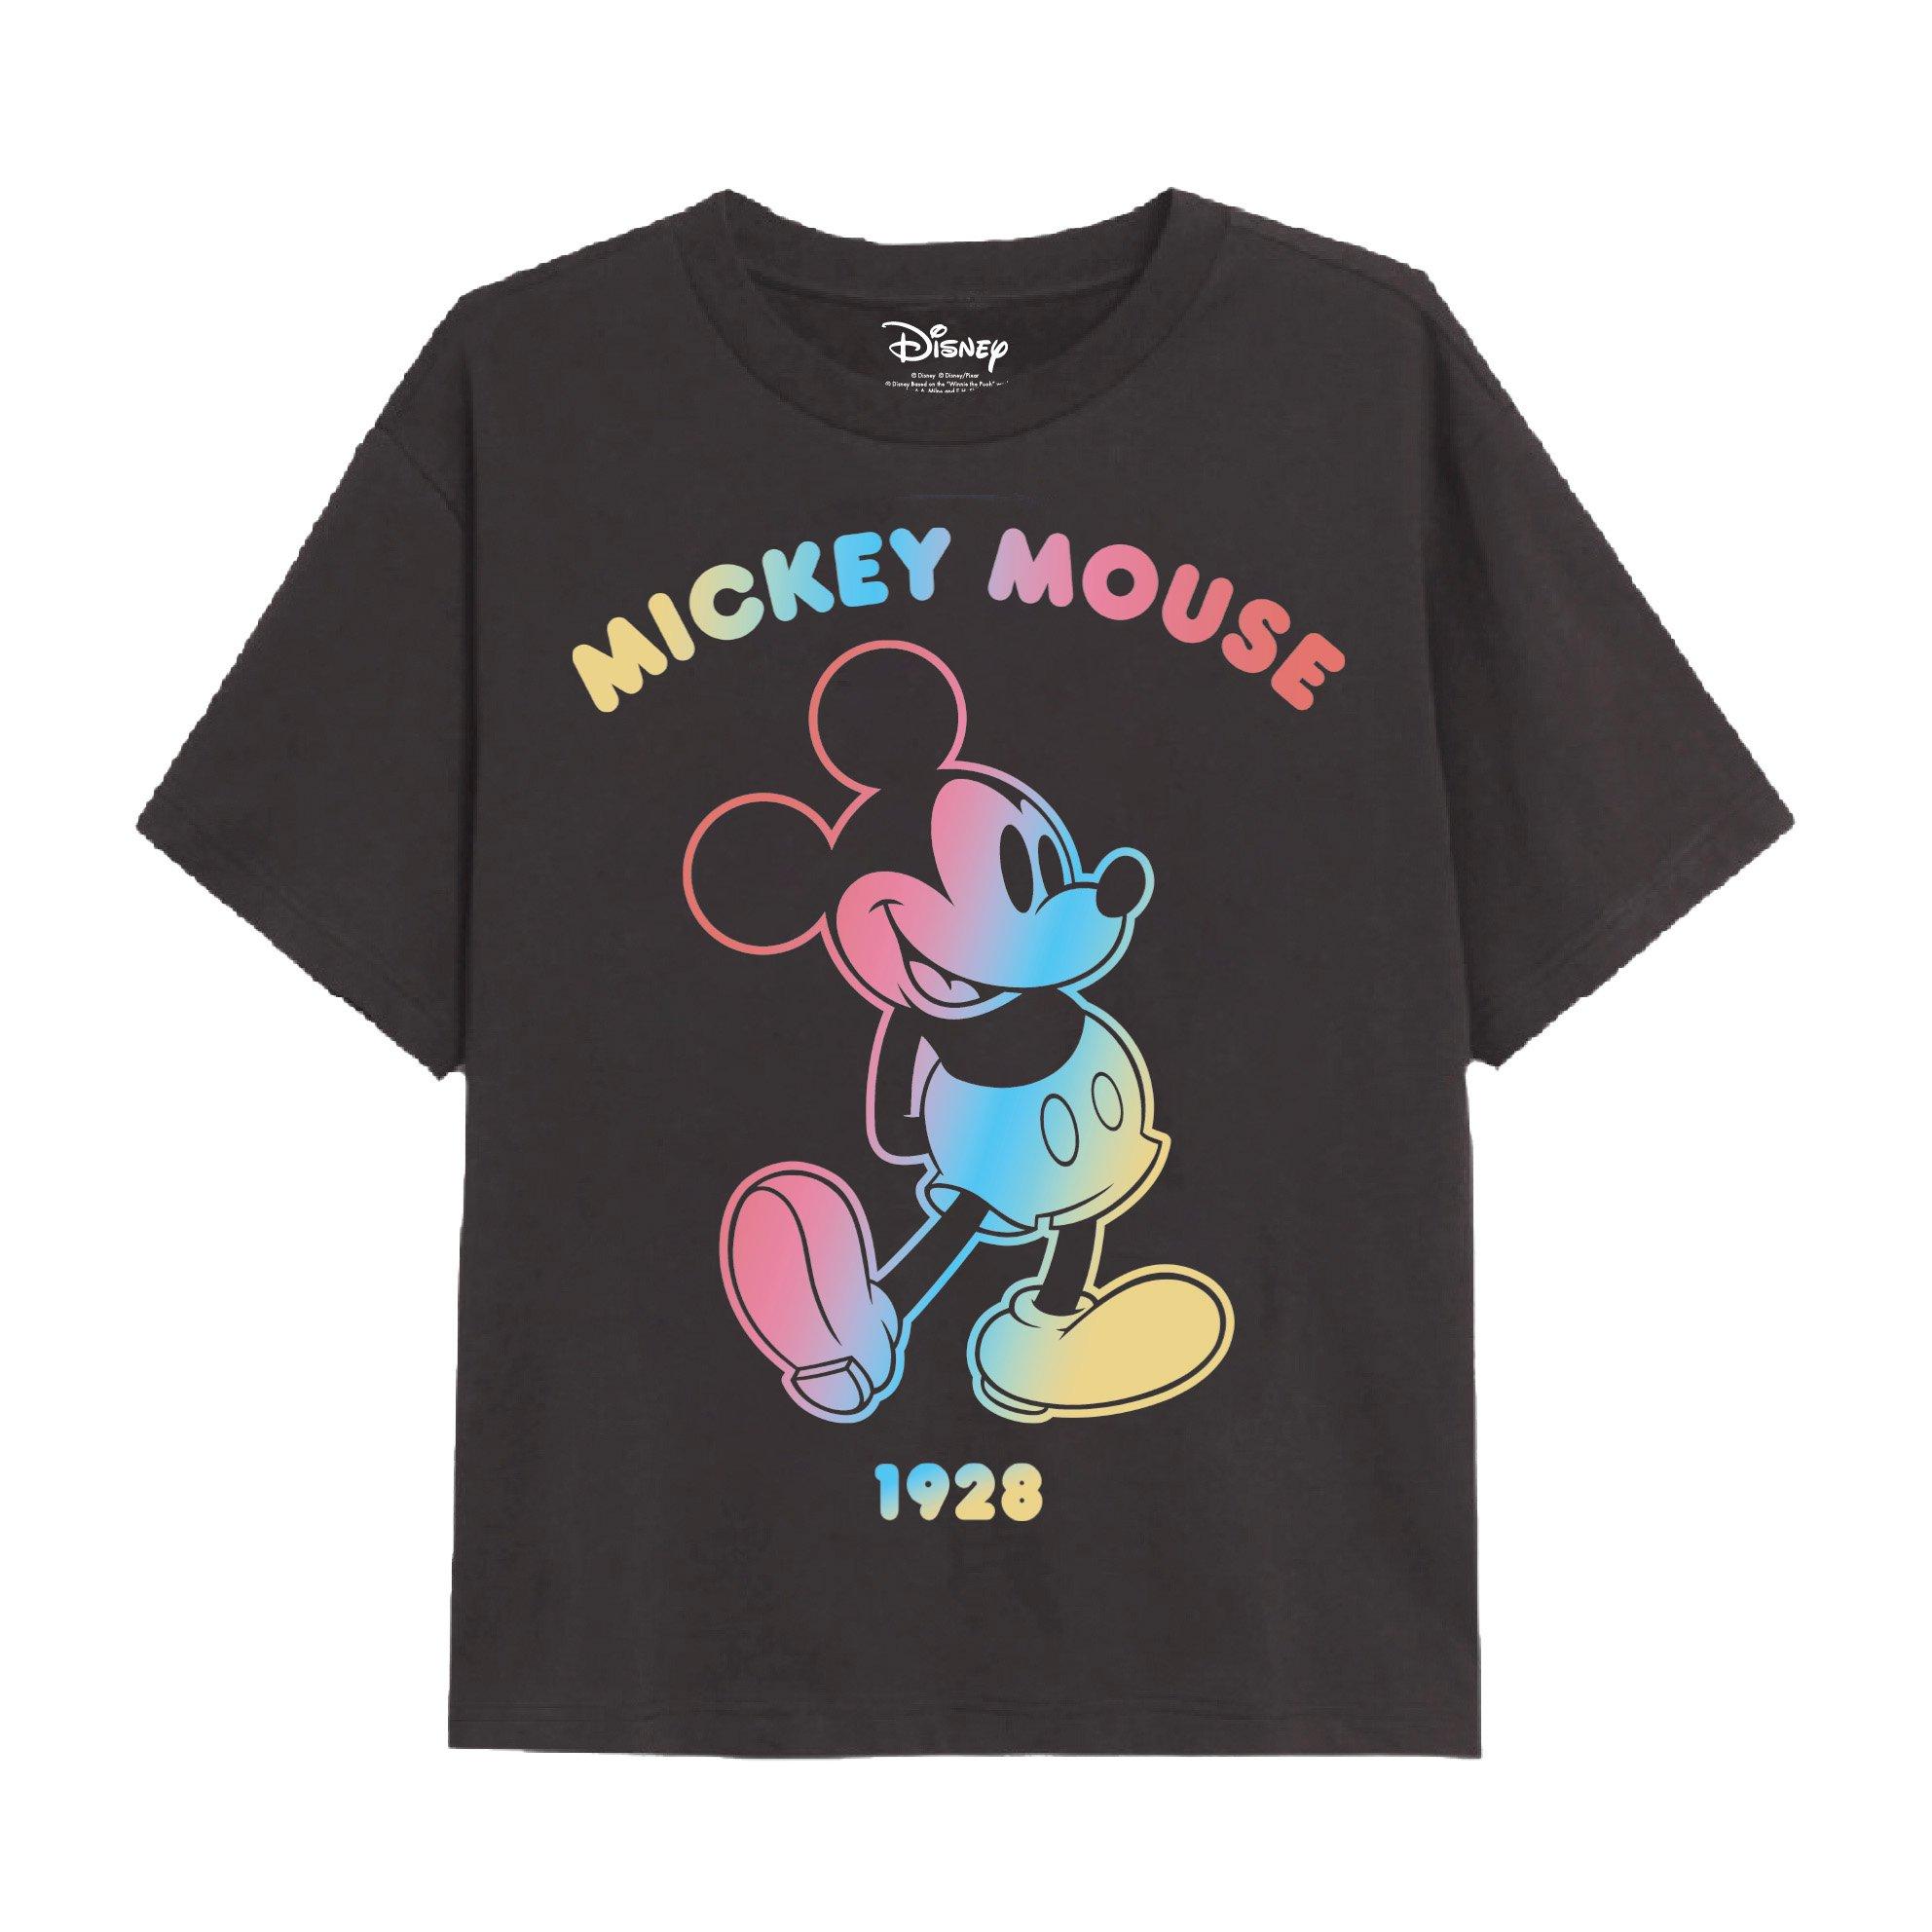 Футболка с градиентным контуром Микки Мауса Disney, серый футболка с градиентным контуром микки мауса disney серый